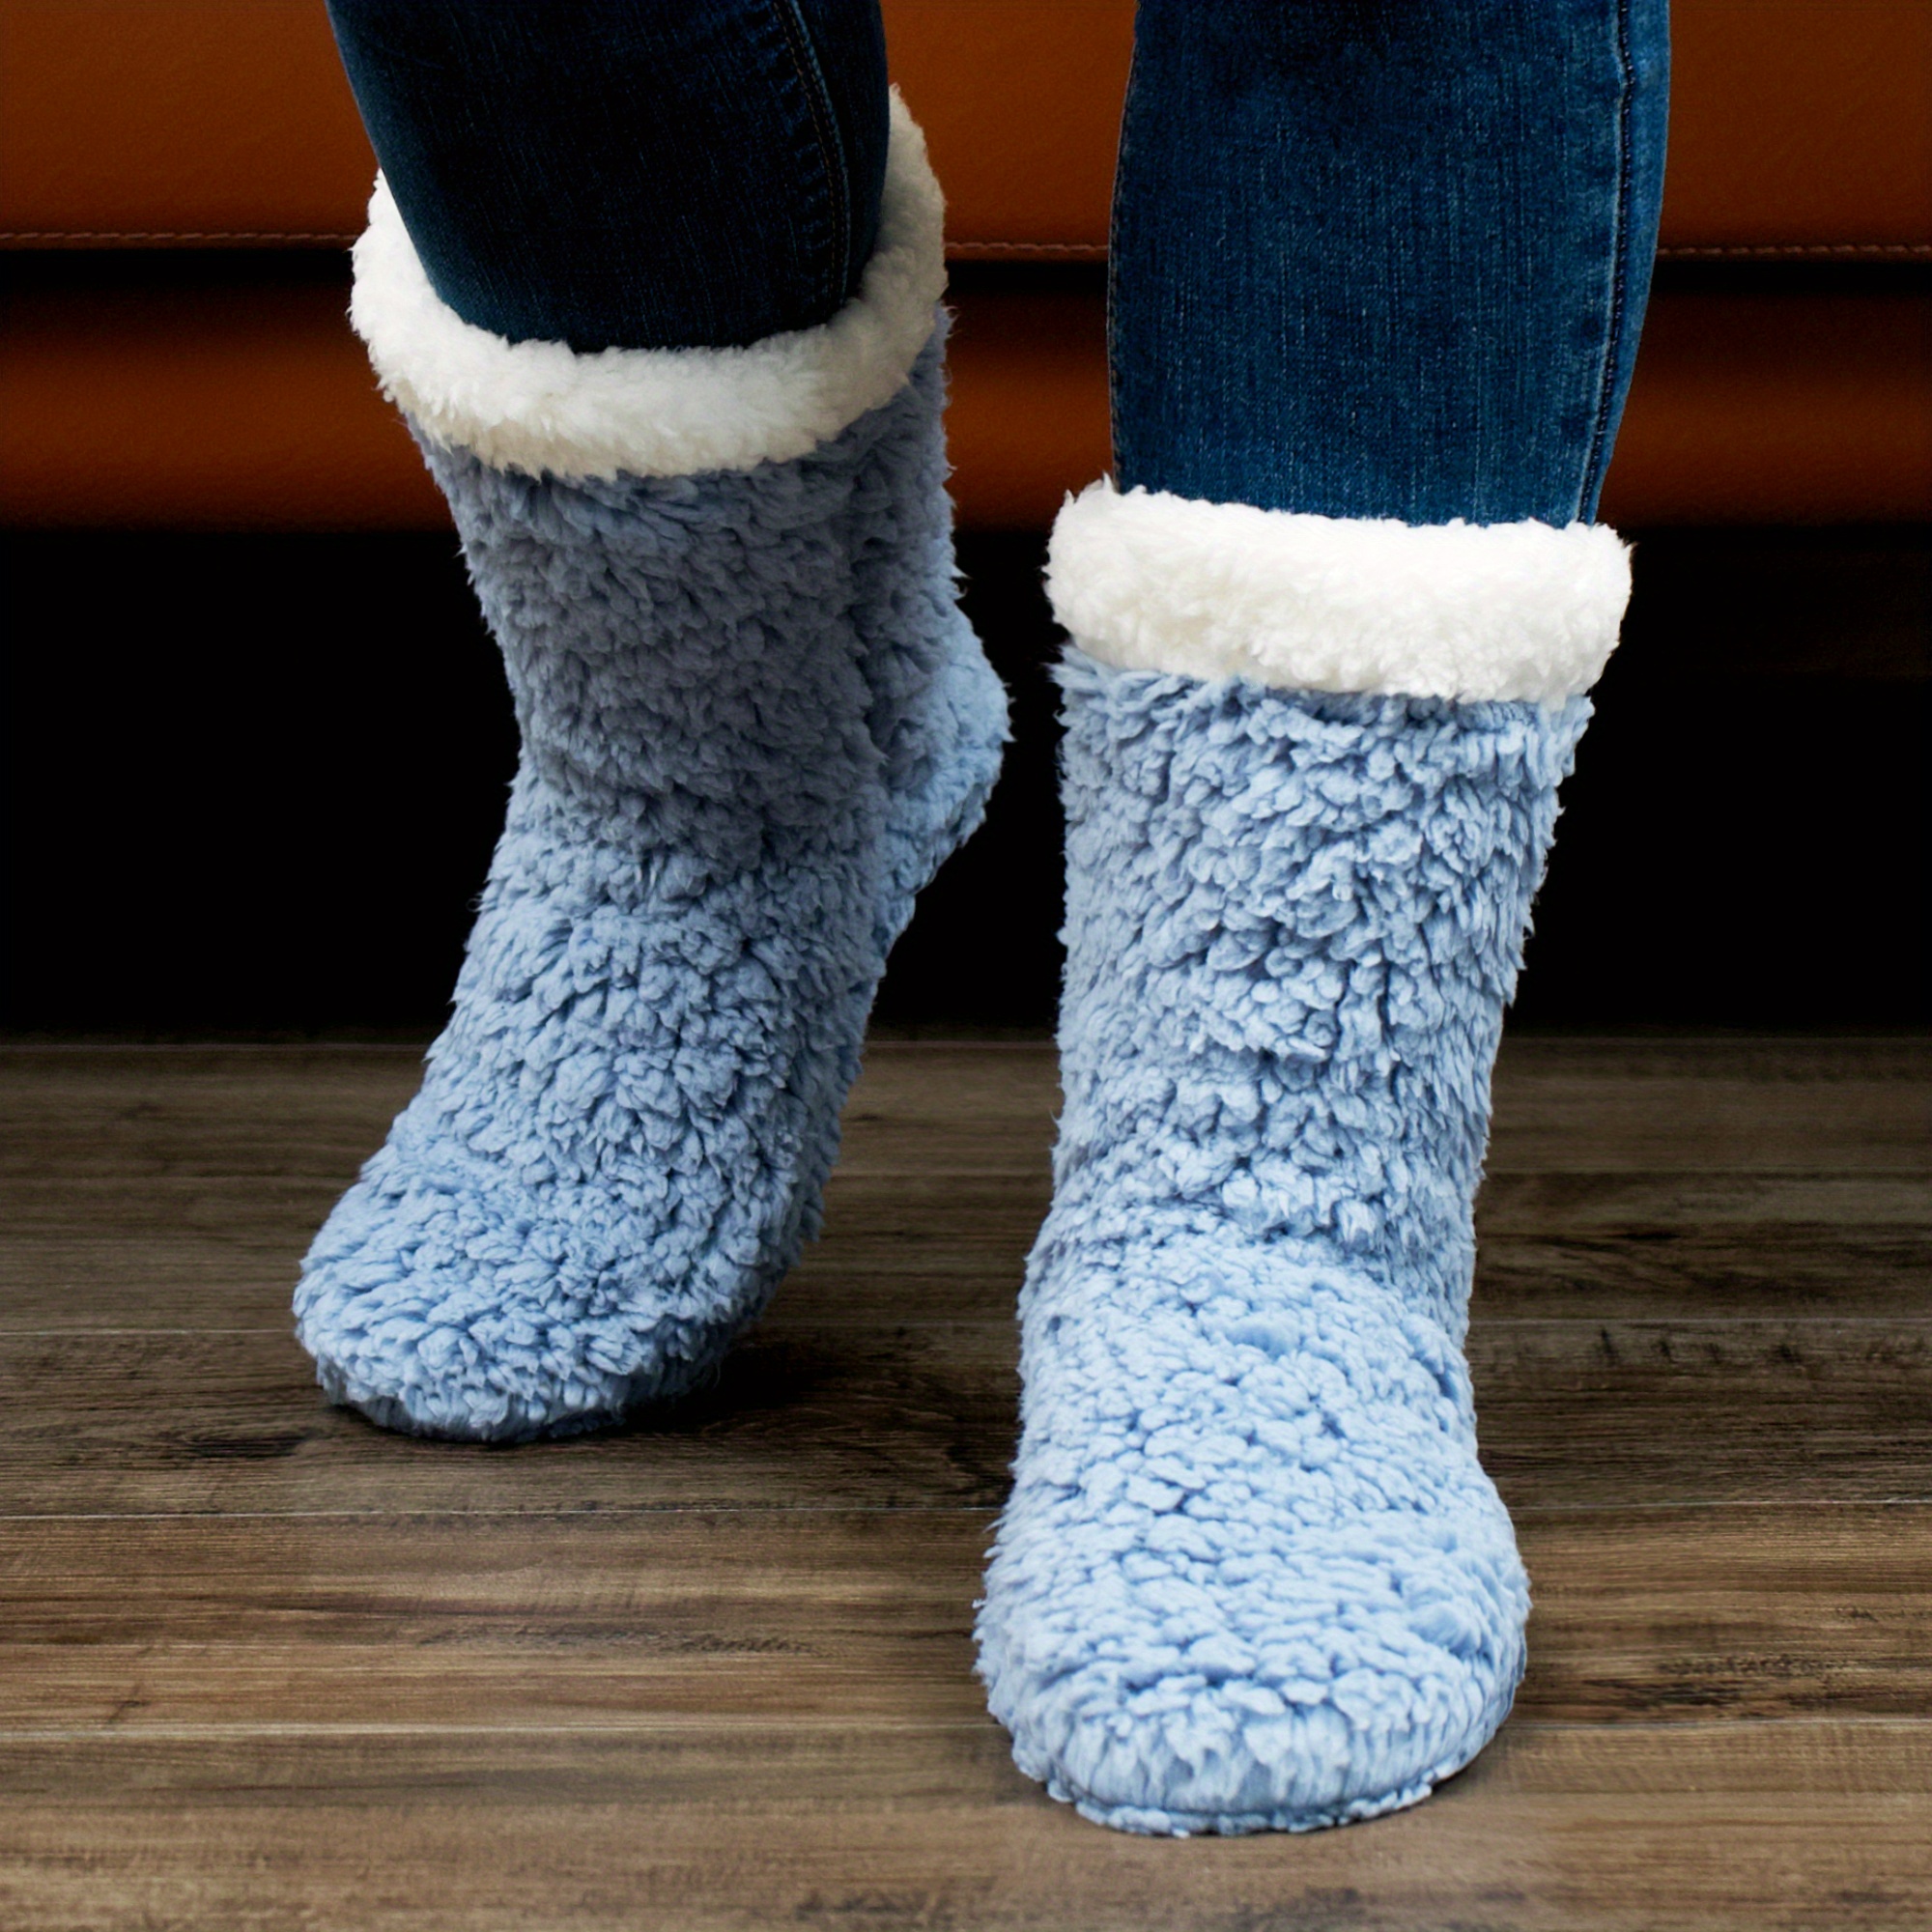  XIRUJNFD Calcetines tejidos y de terciopelo para interiores,  calcetines para mujer, calcetines pantufla para mujer con agarre  antideslizantes, calcetines térmicos antideslizantes para suelo interior  (azul marino, 5.5-7.5) : Ropa, Zapatos y